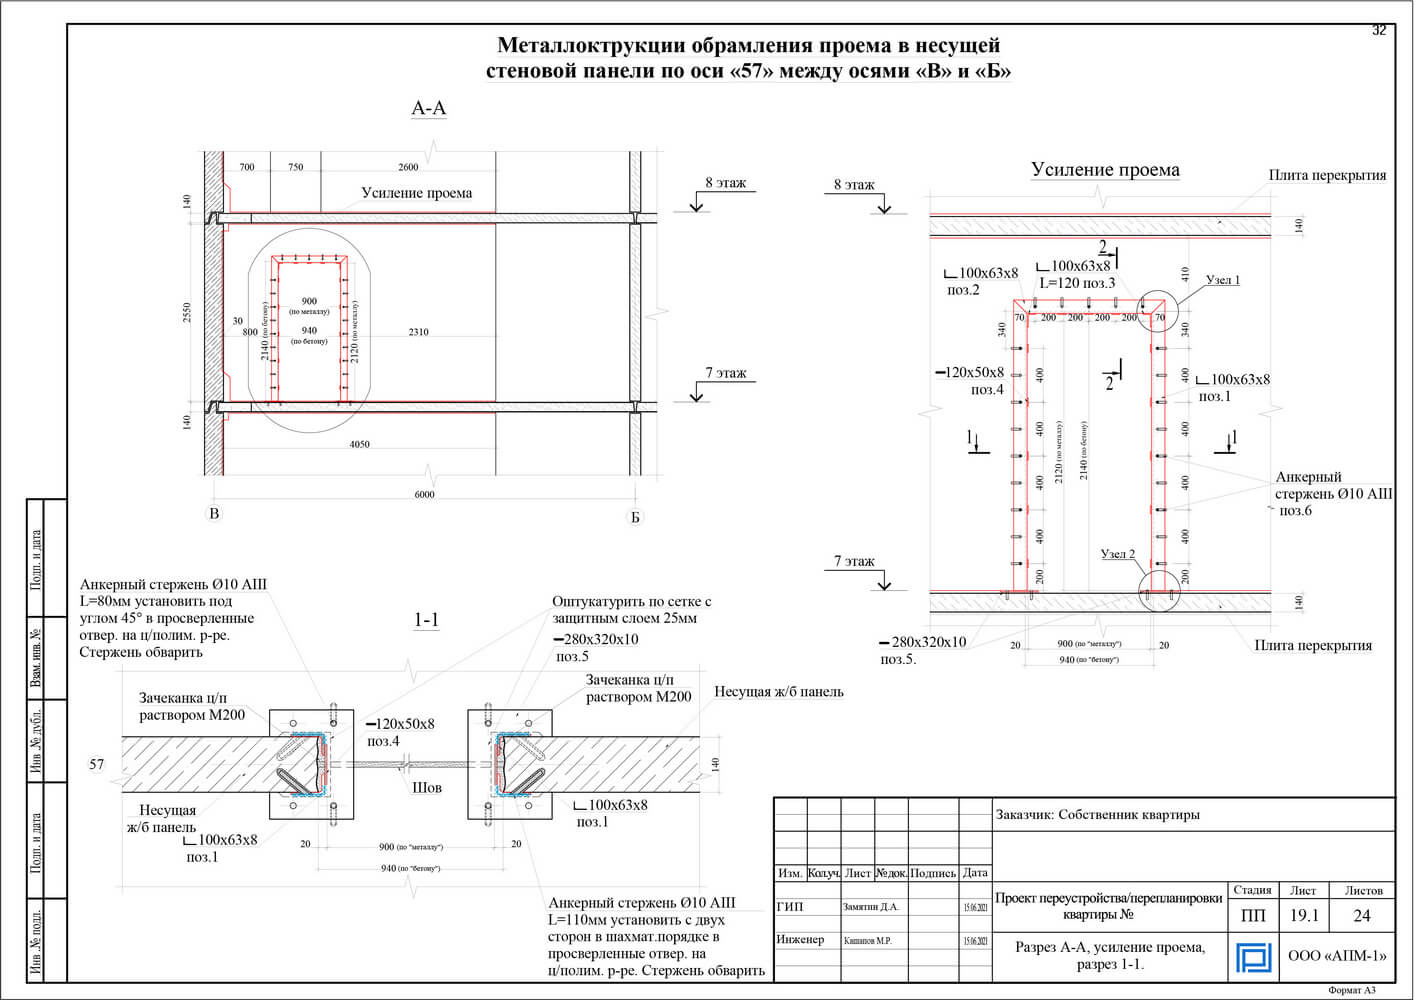 Если в квартире создается новый проем, прилагается схема дверного проема и/или схема резки нового проема с усилением металлоконструкциями